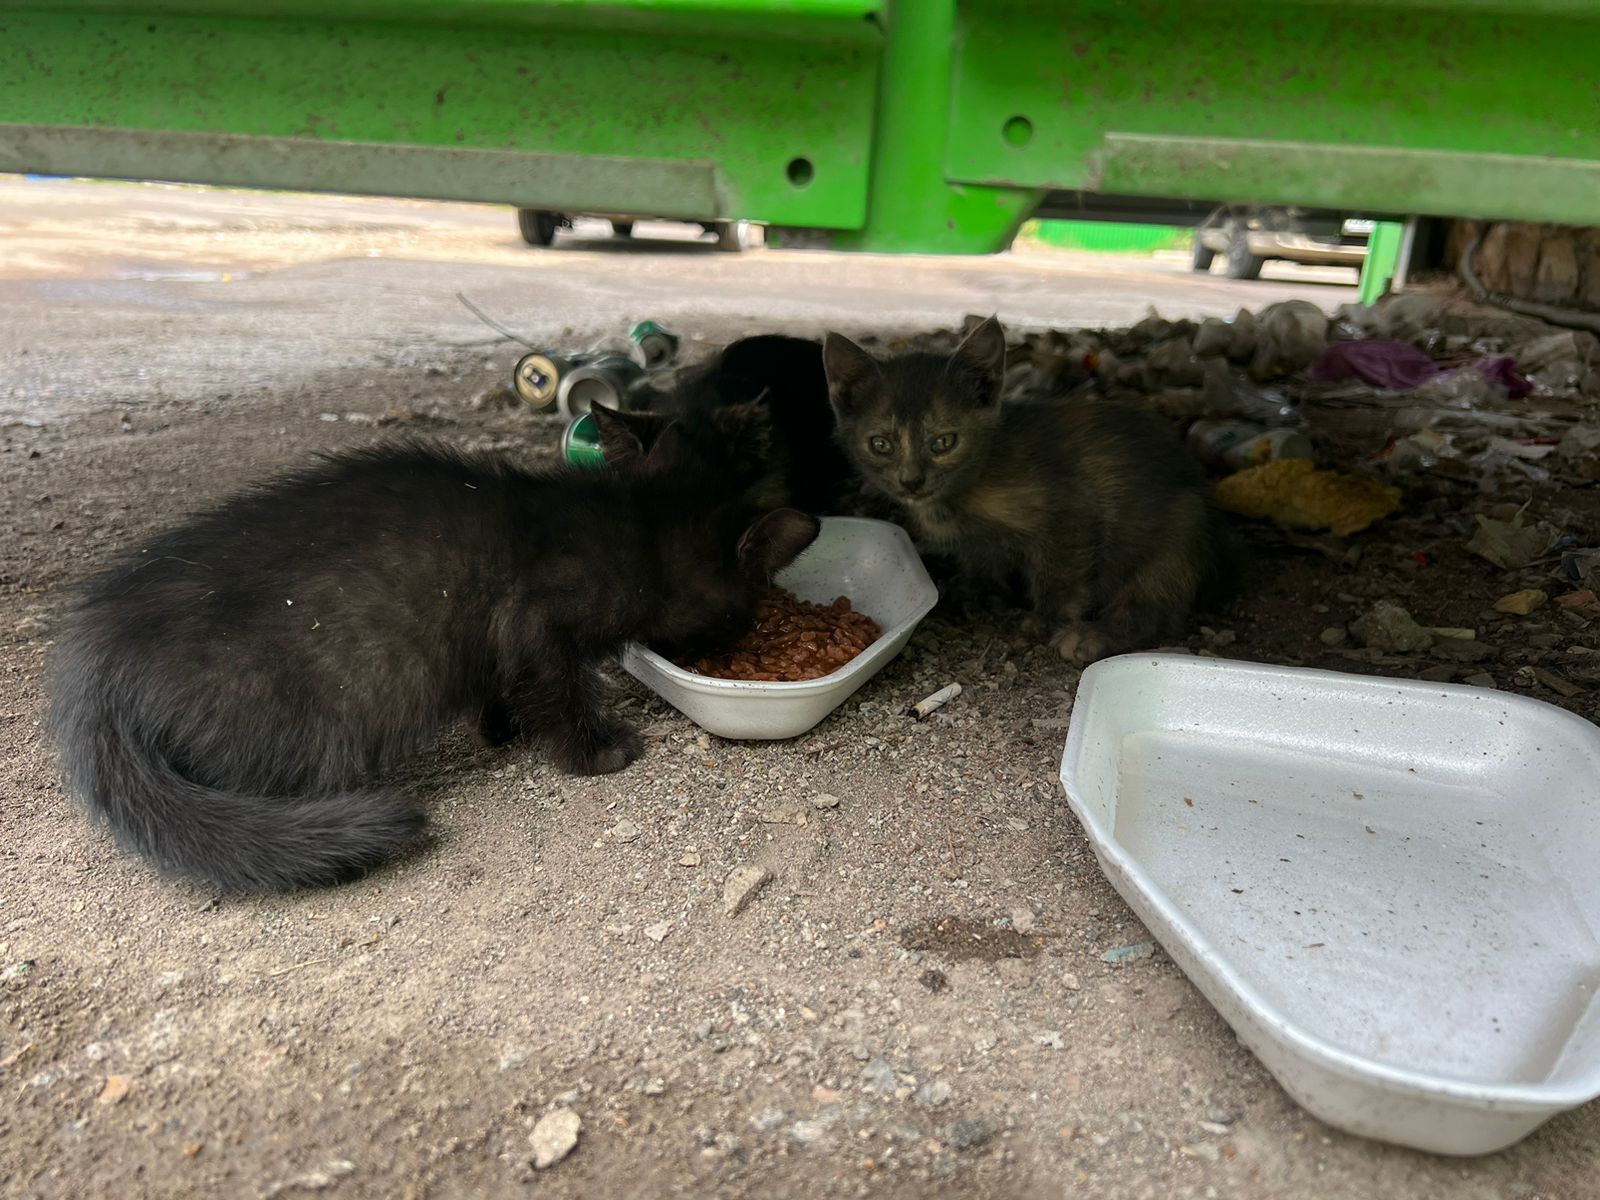 Срочно! Найдены голодные котята в Затоне, требуется передержка или новый хозяин